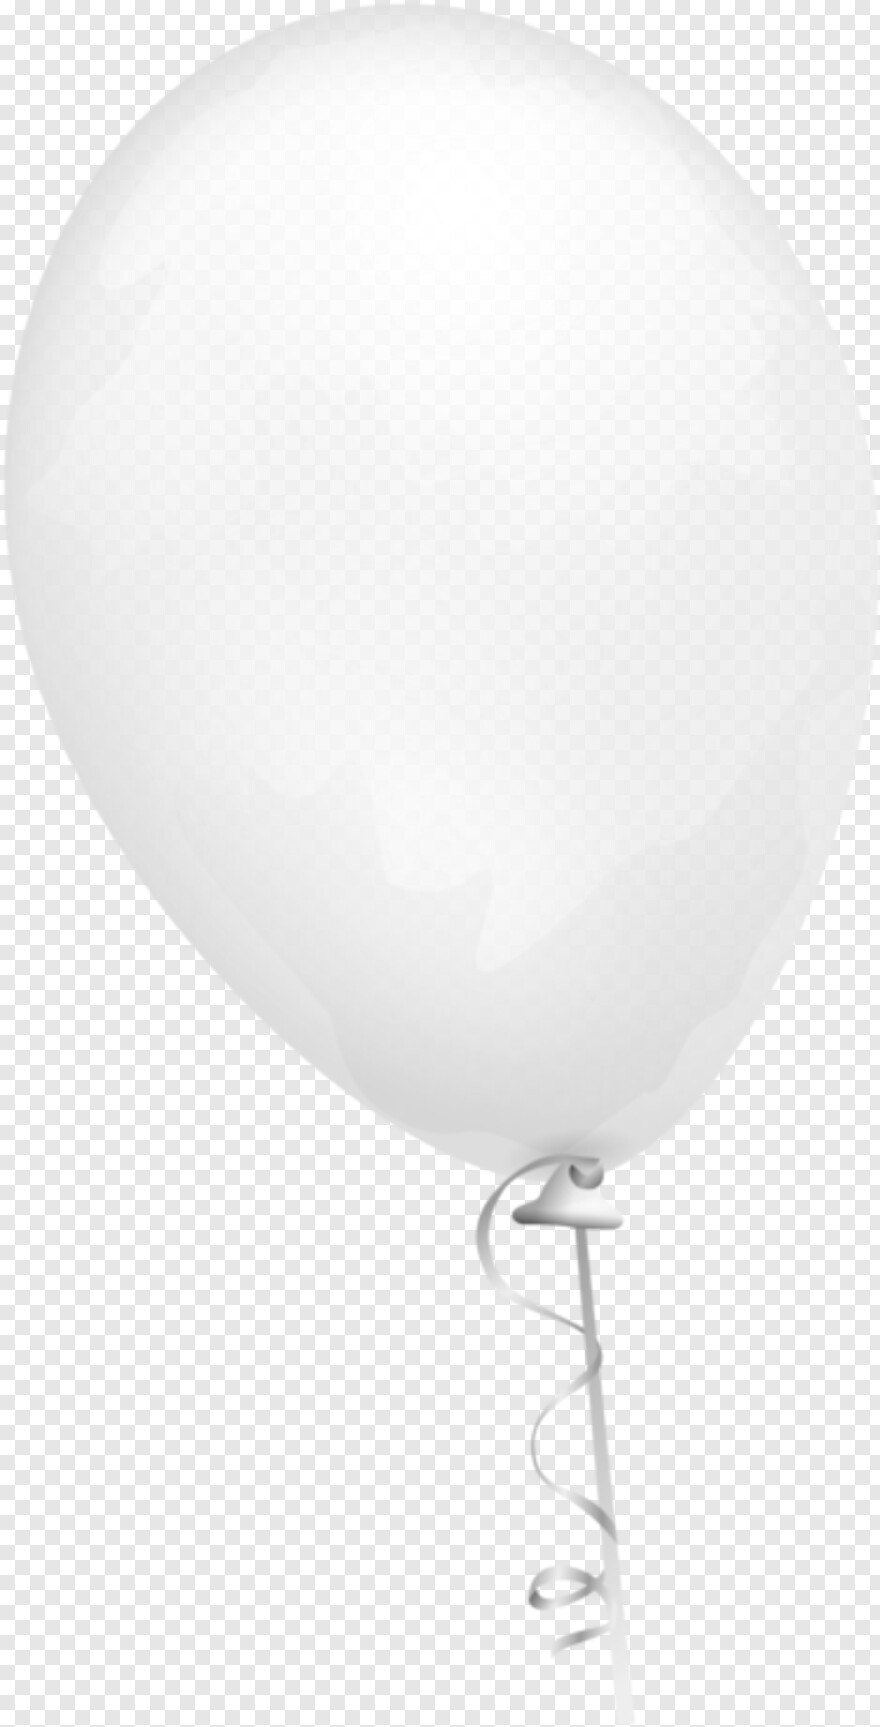 water-balloon # 415935